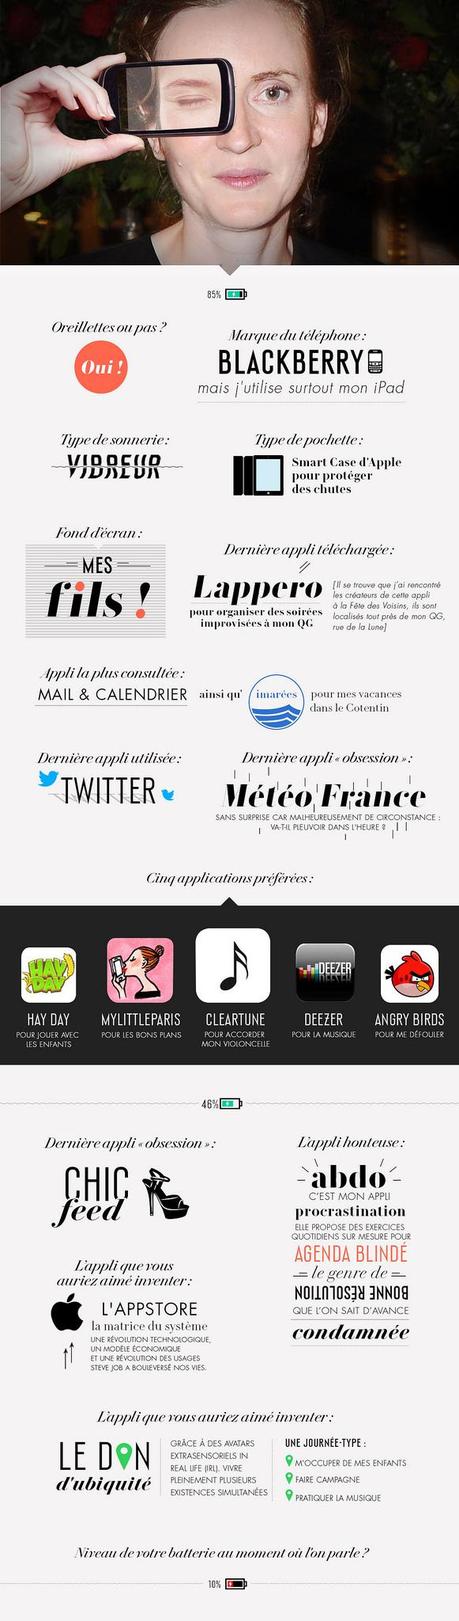 [Infographie] NKM / Hidalgo expliquent l'utilisation de leur iPhone et iPad